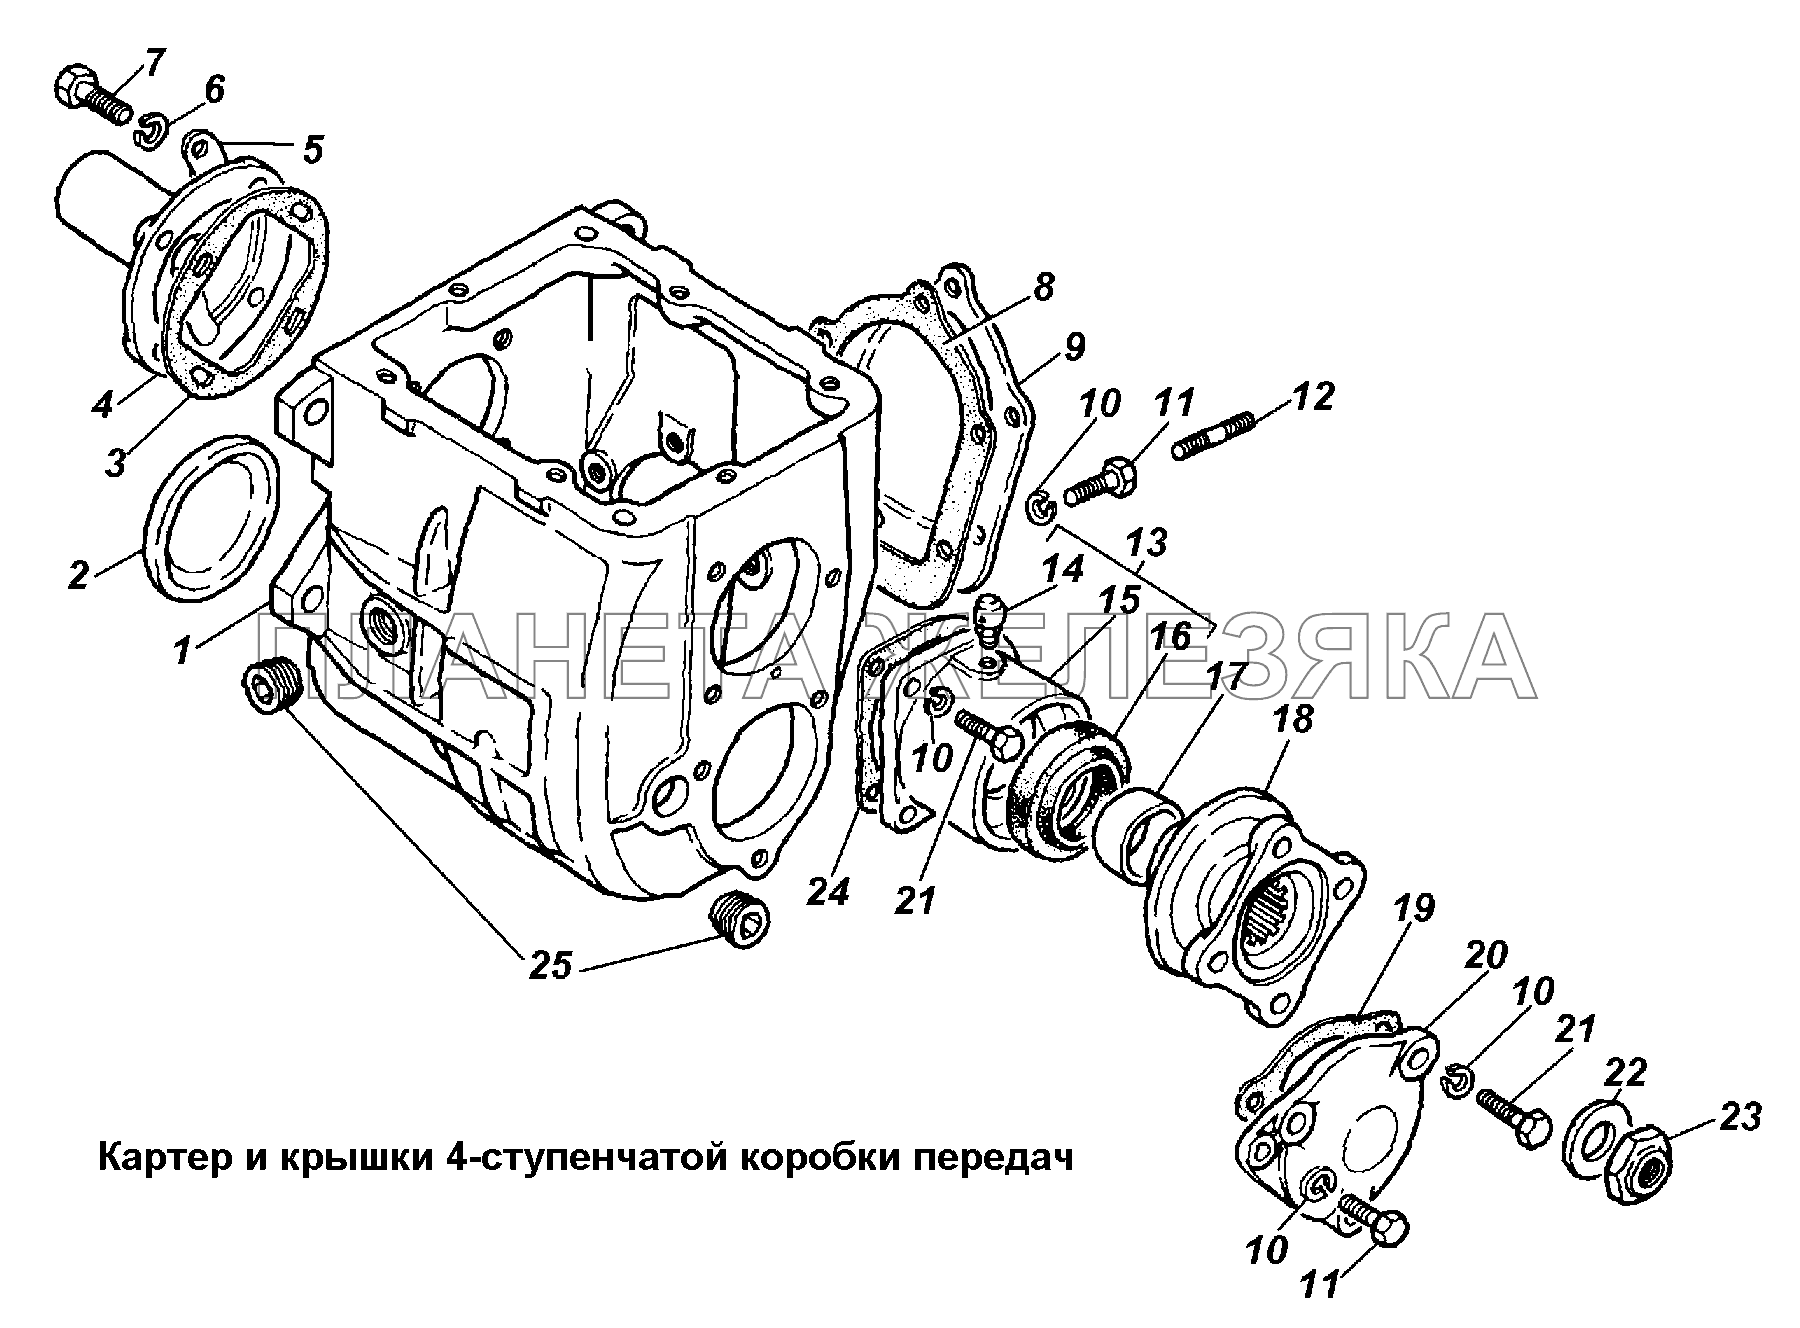 Картер и крышки 4-ступенчатой коробки передач ГАЗ-3308